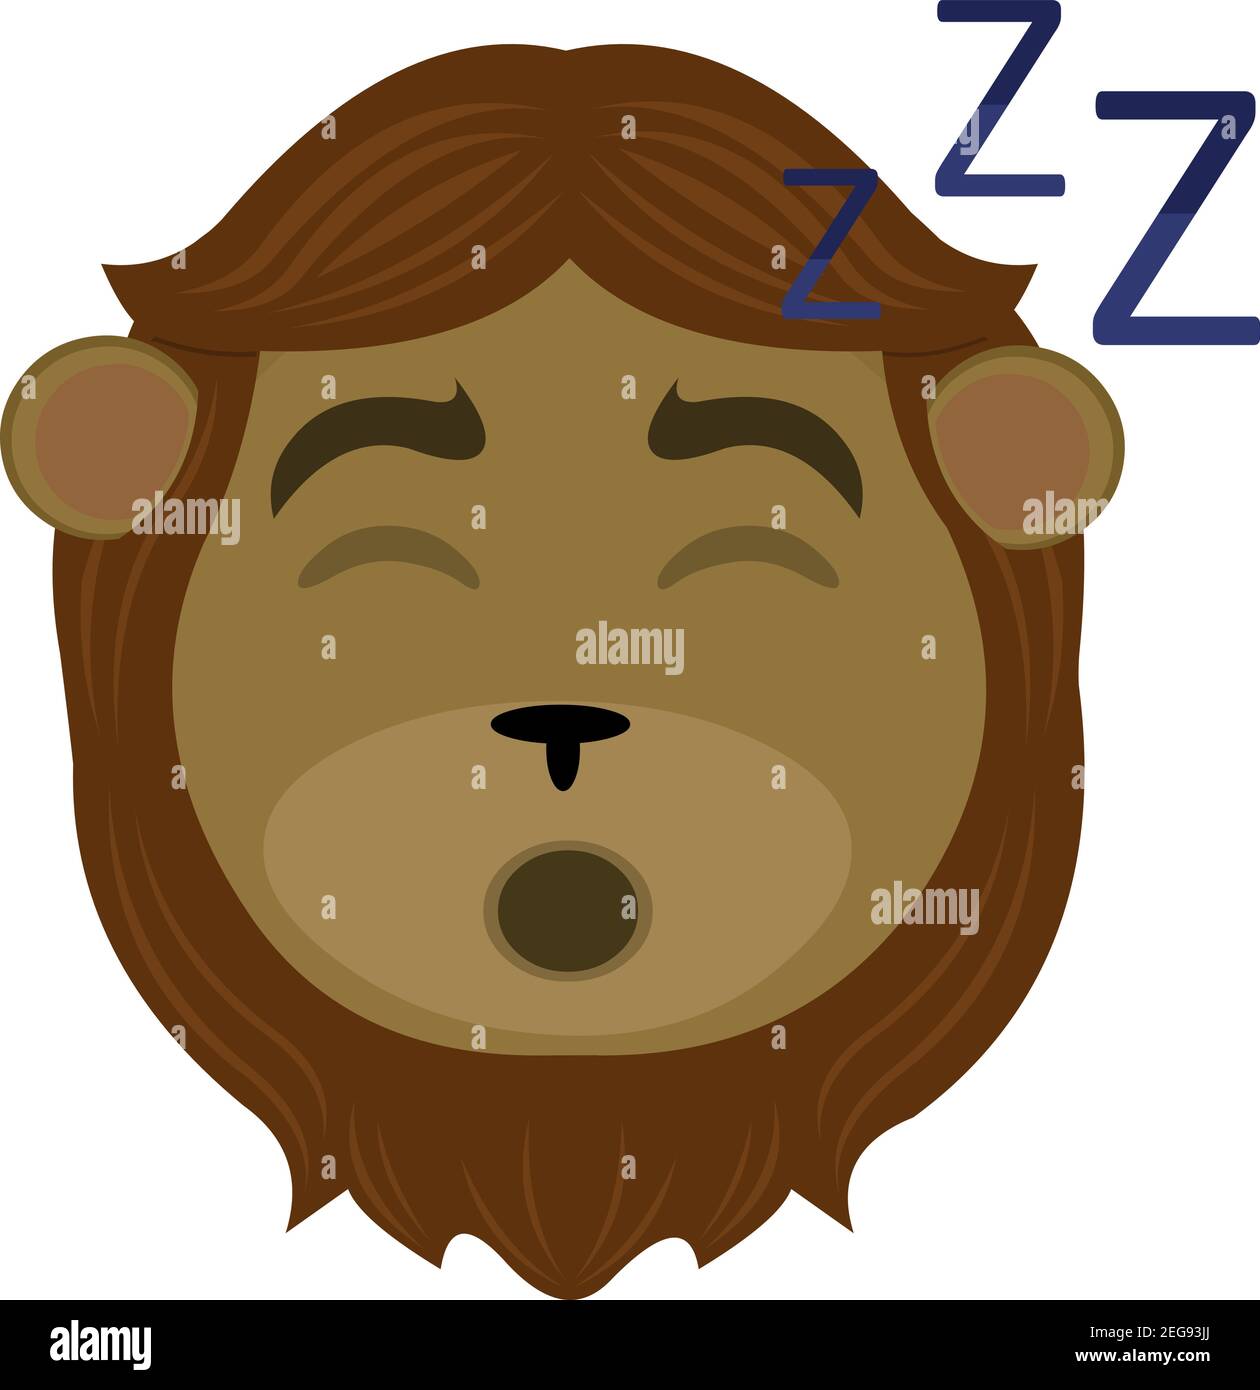 Vecteur émoticône illustration dessin animé d'une tête de lion avec l'expression fatiguée et ses yeux fermés et ronflant avec sa bouche ouverte, dormant Illustration de Vecteur